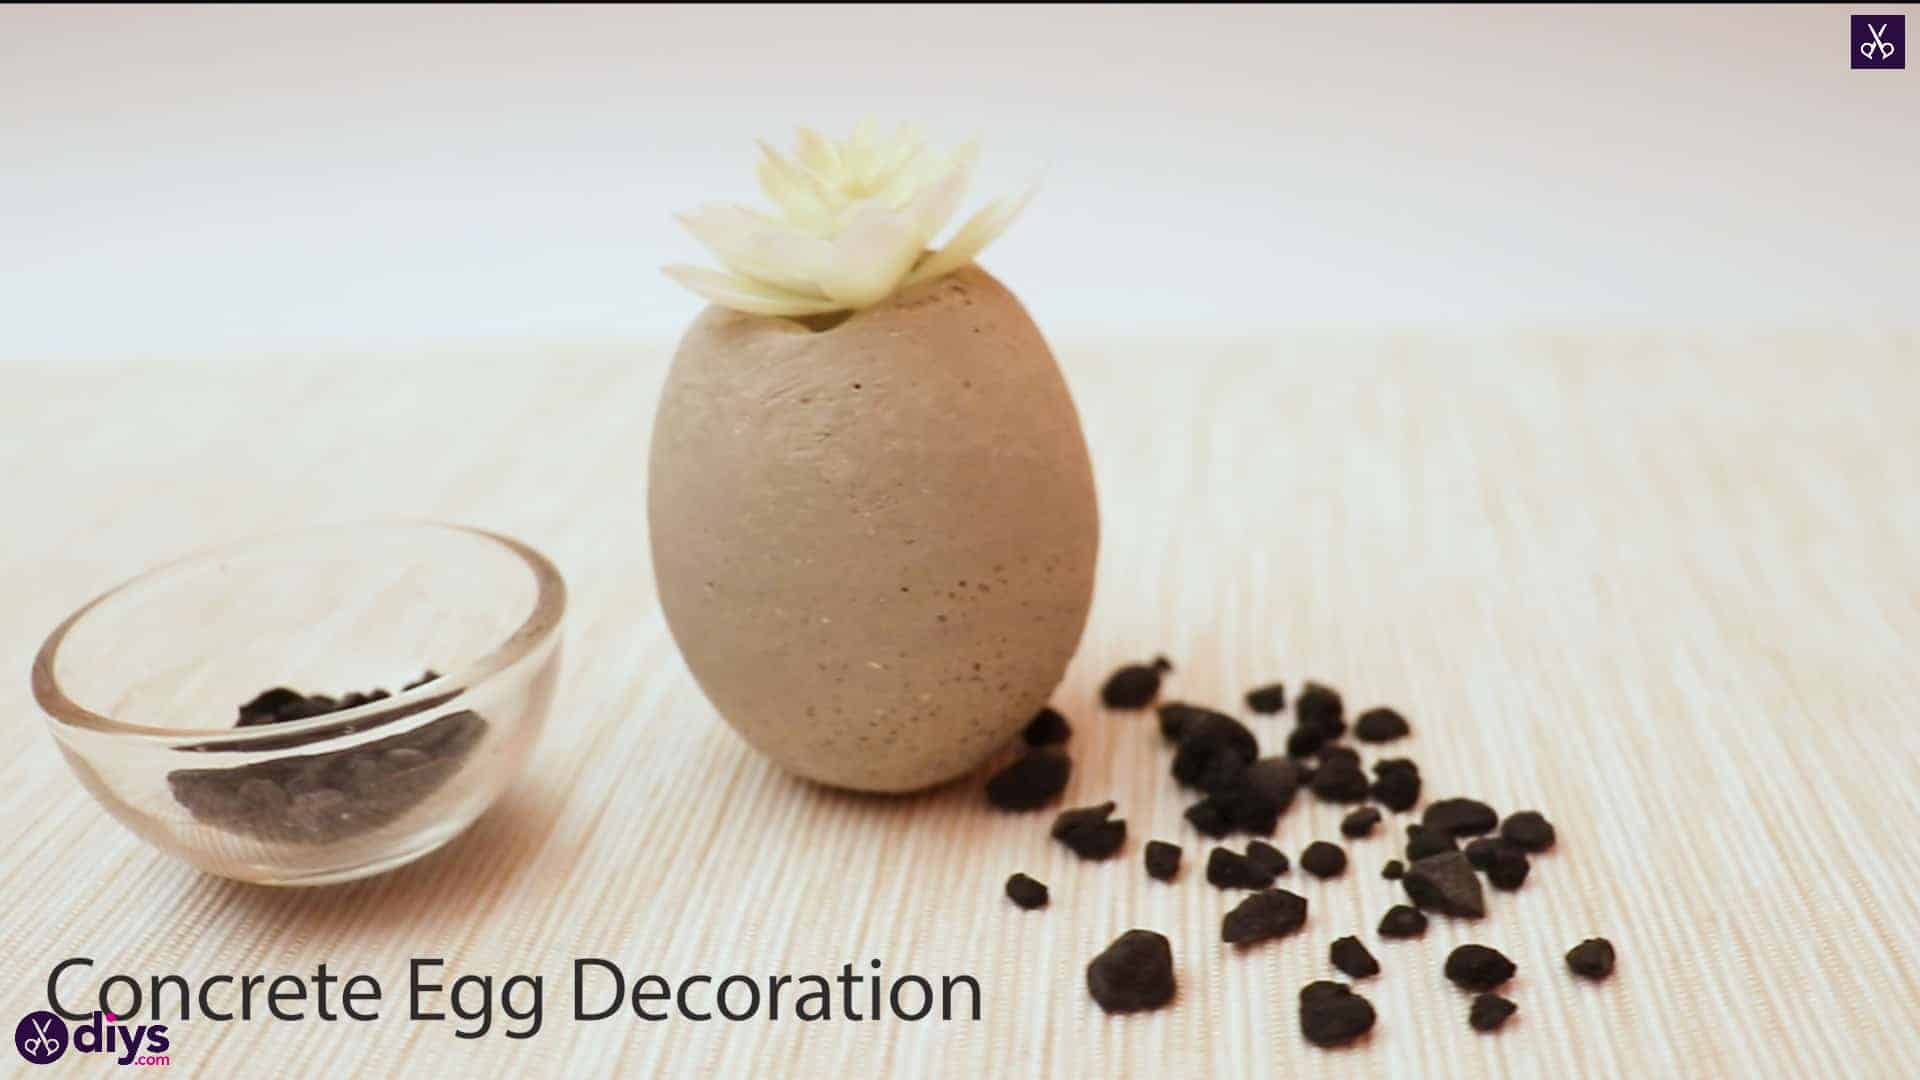 Concrete egg decoration